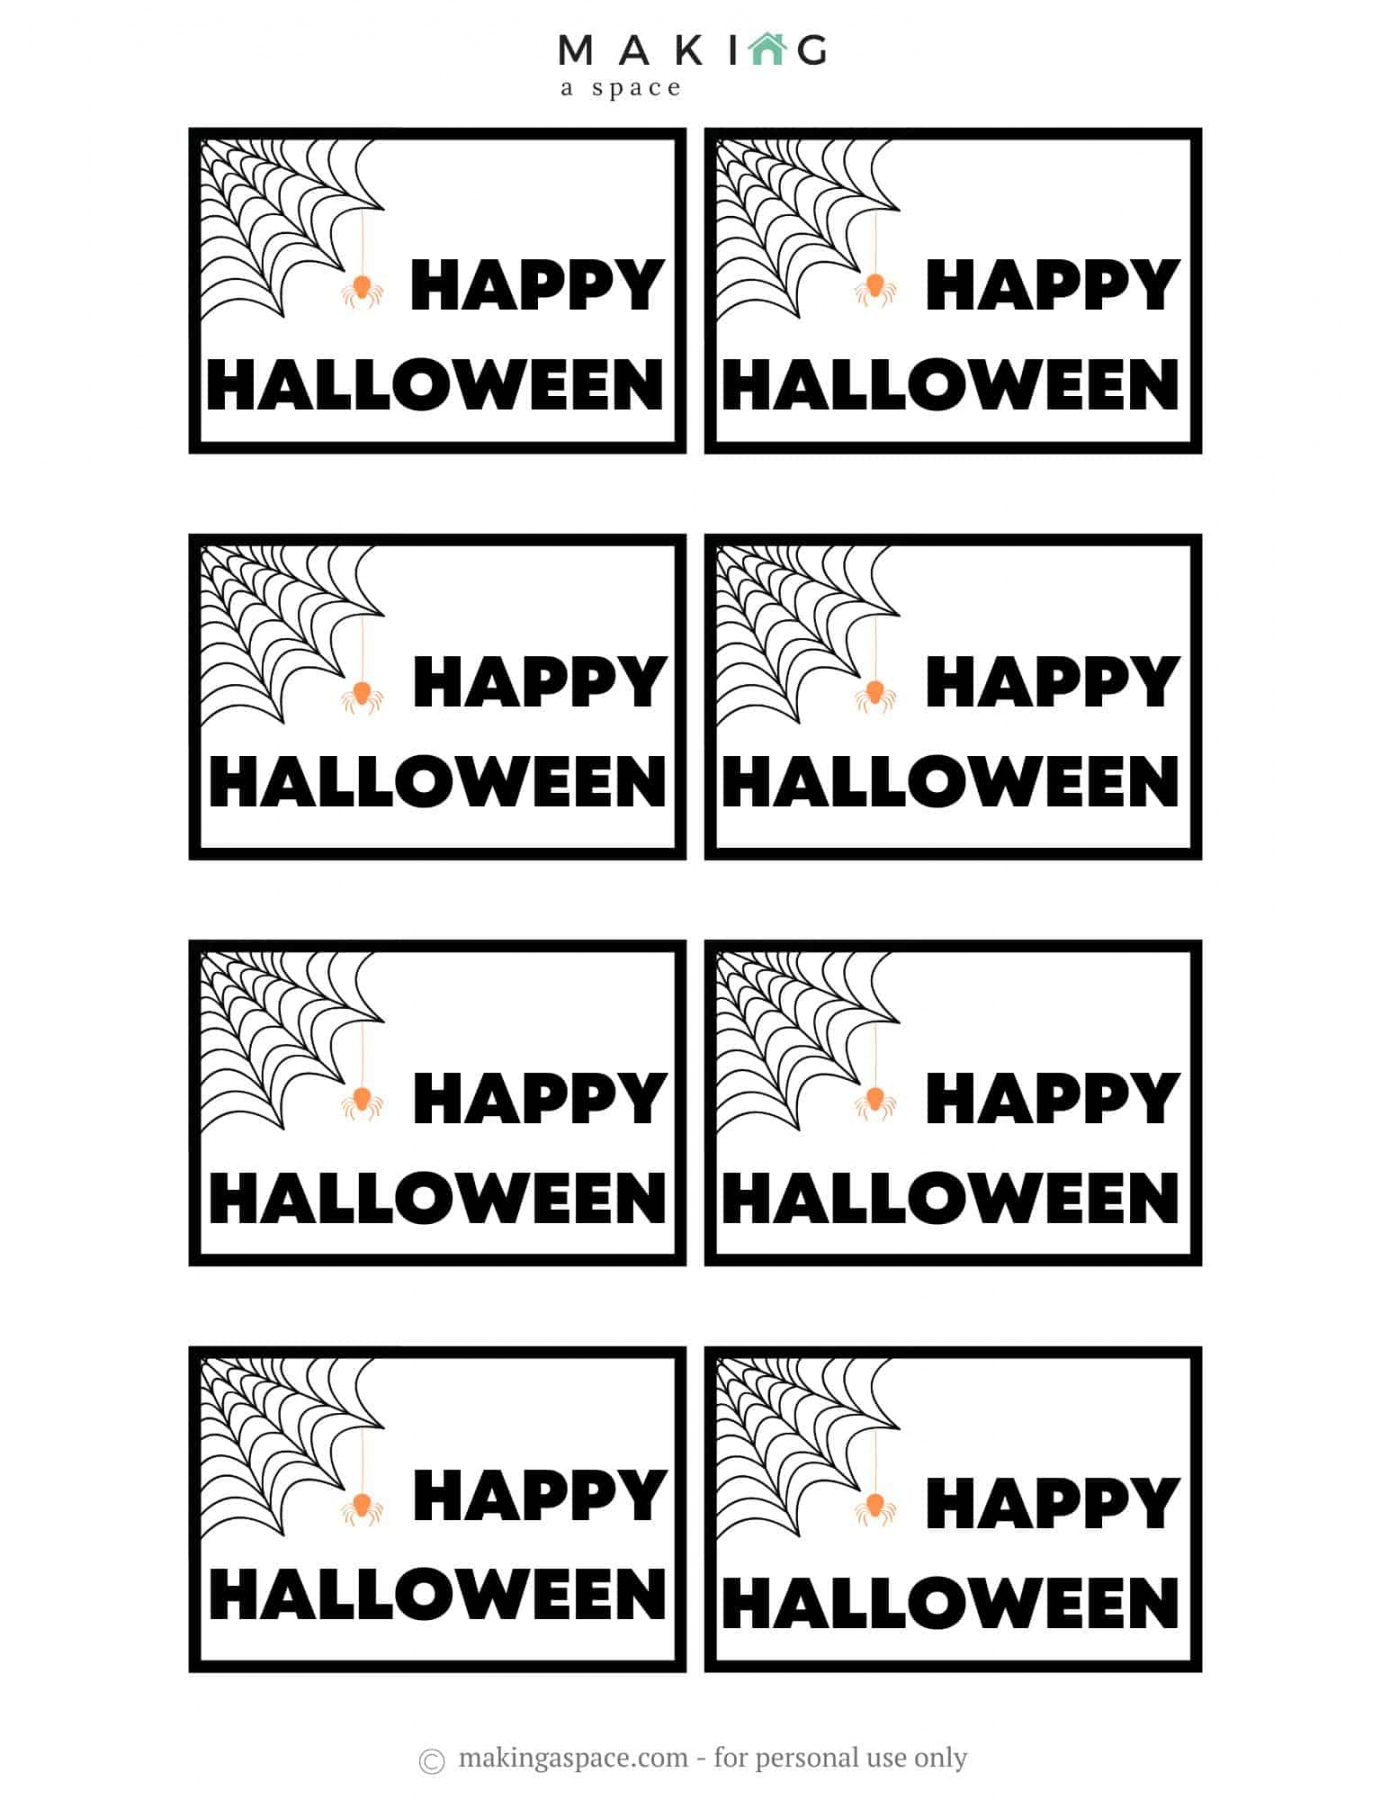 Free Printable Halloween Tags - Printable - Free Printable Halloween Gift Tags - Making A Space